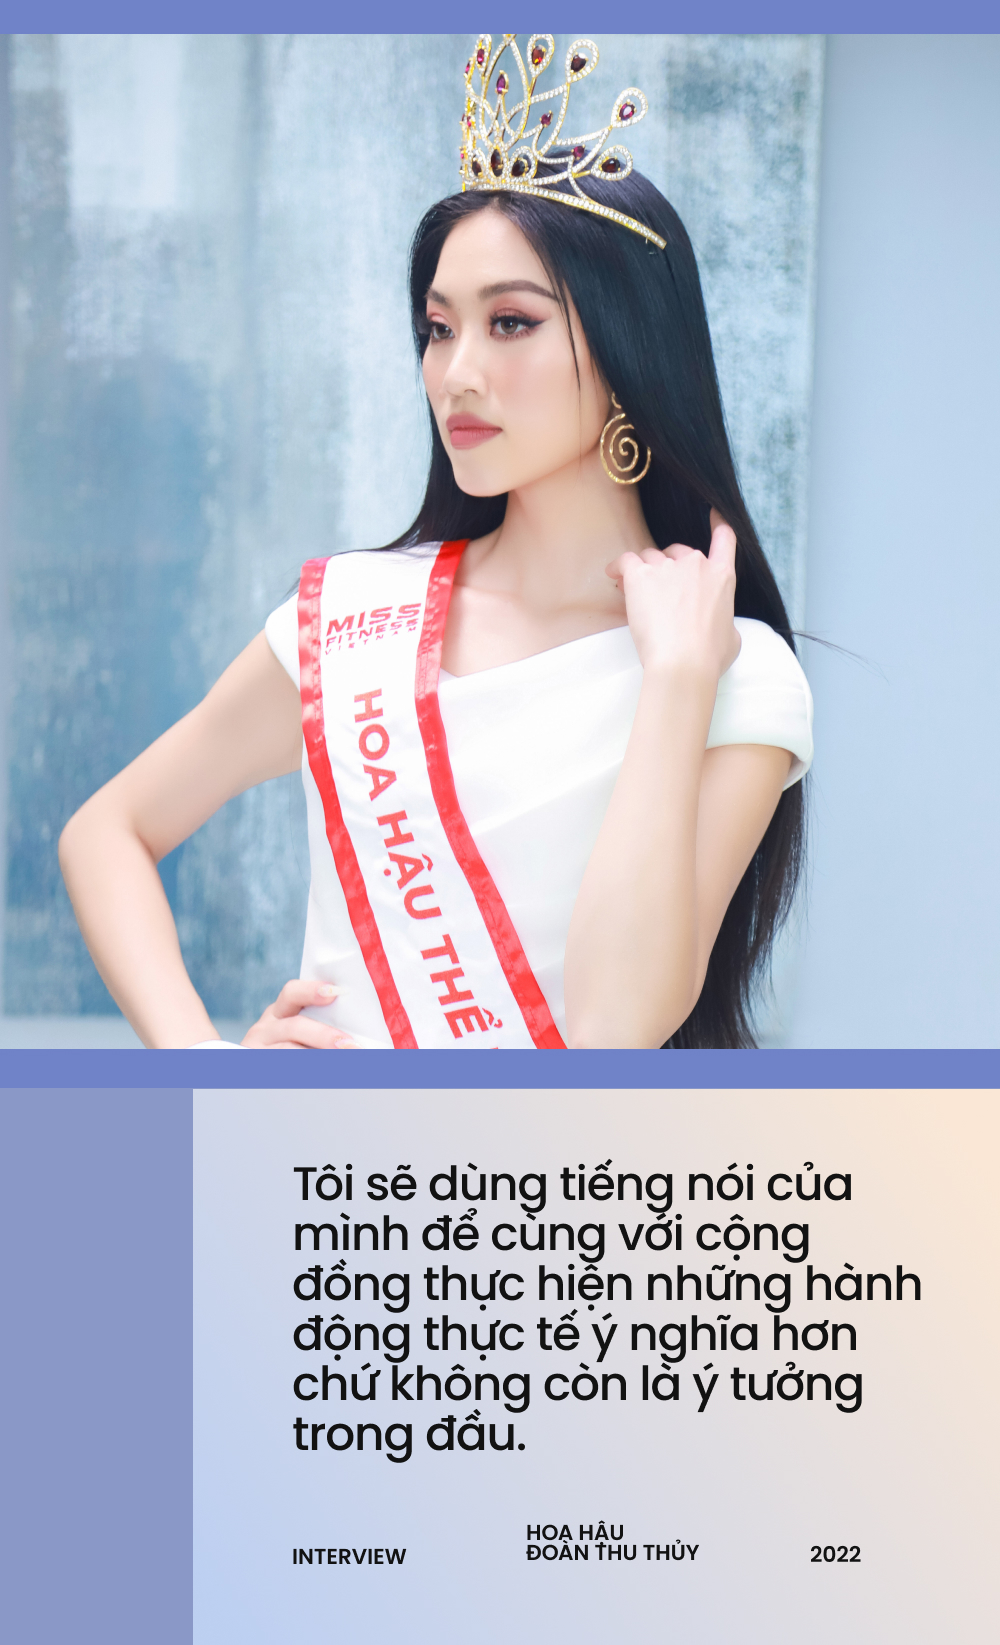 Đoàn Thu Thủy - Hoa hậu Thể thao Việt Nam: Tôi cảm nhận được sức nặng của vương miện, lùm xùm chất kích thích không thể làm ảnh hưởng  - Ảnh 5.